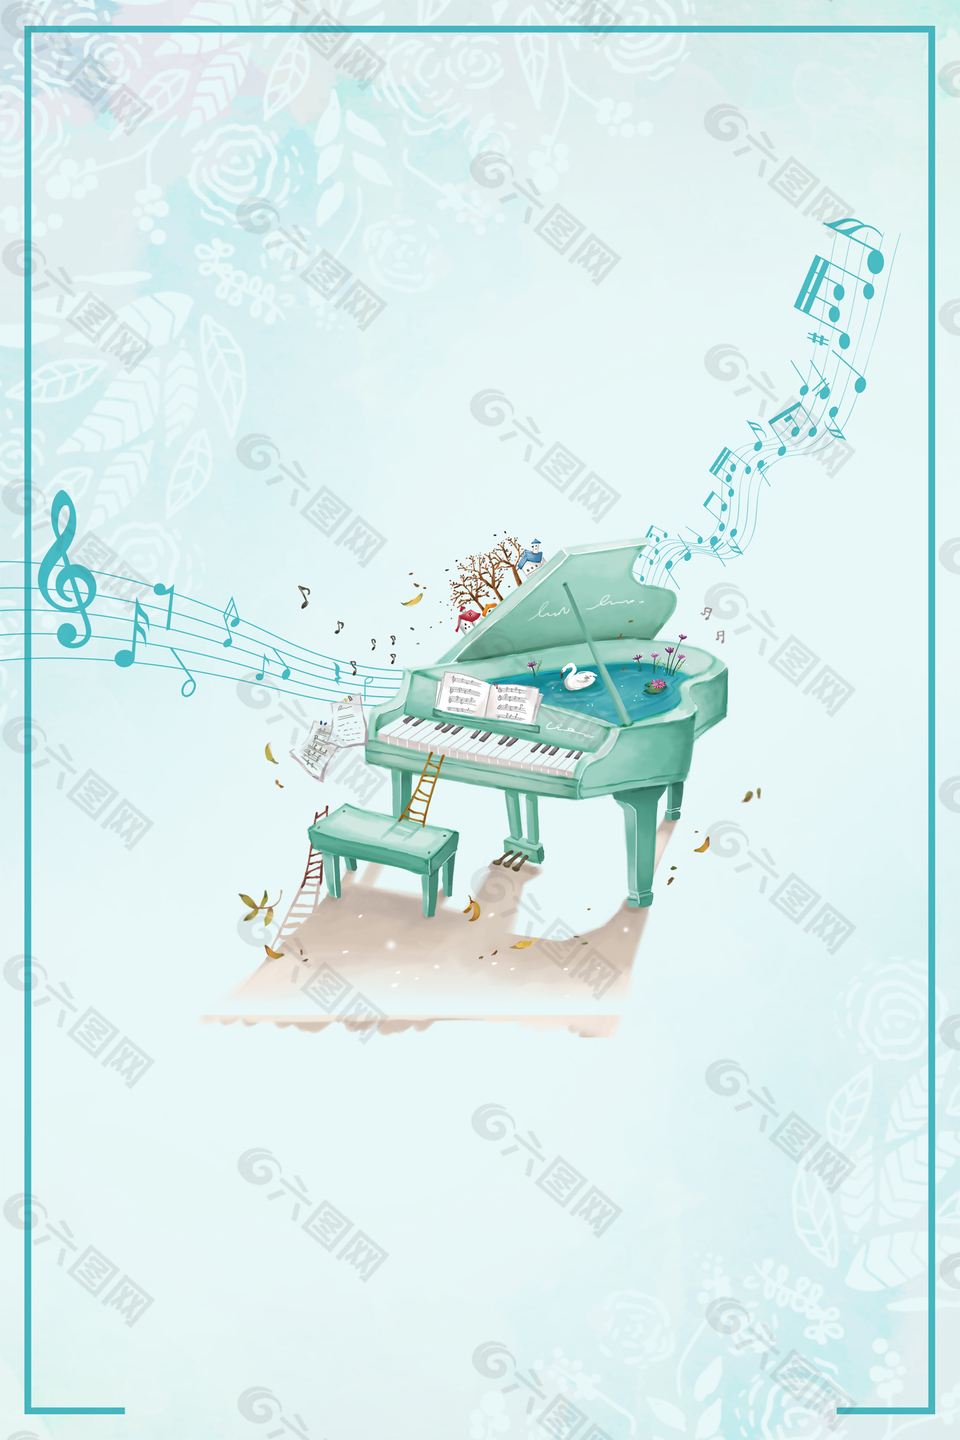 音乐梦想钢琴培训背景